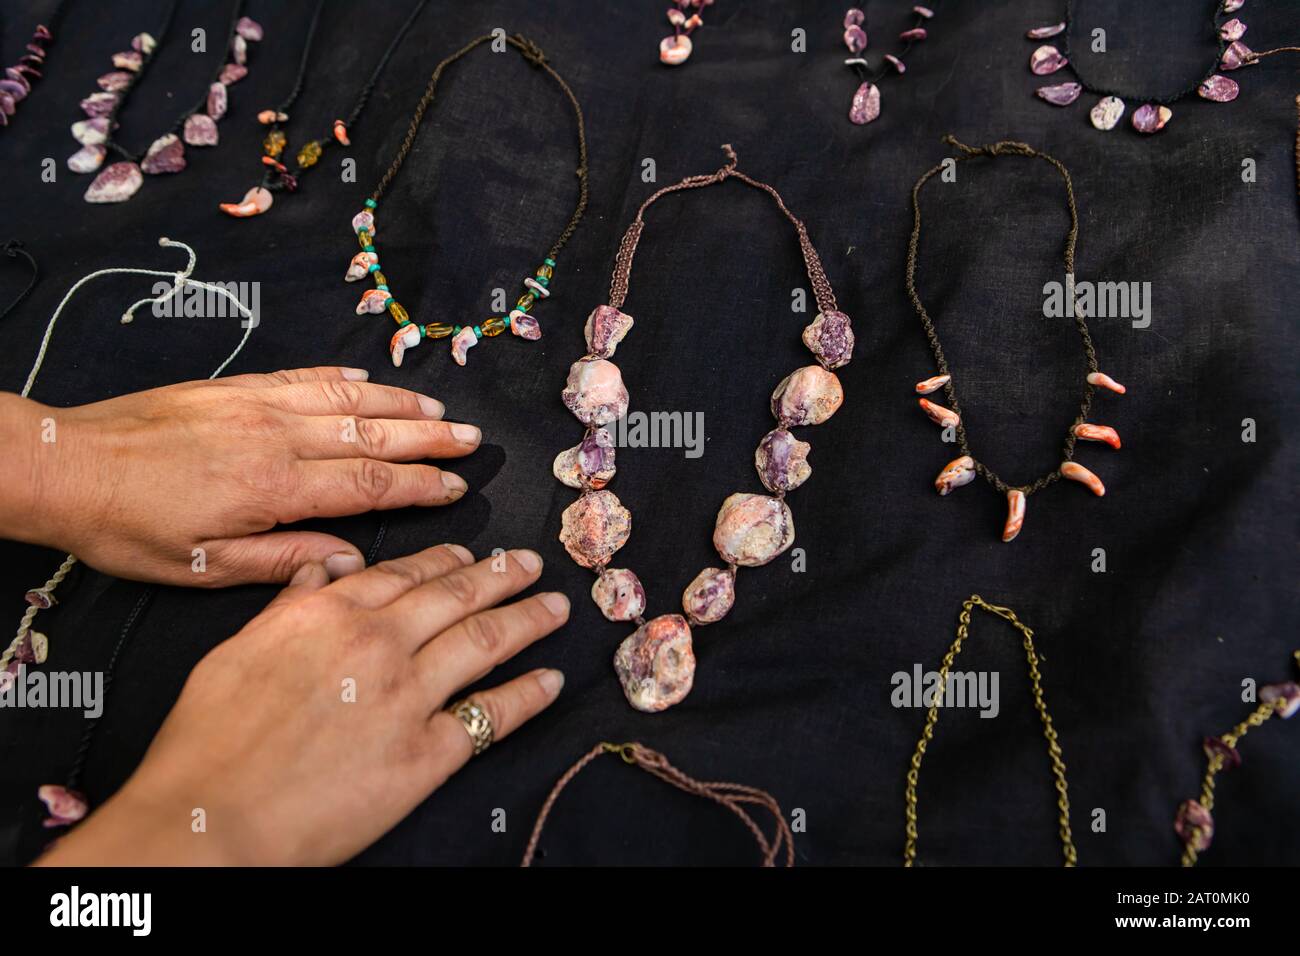 Nahaufnahme der Hände des Mannes, die auf dem schwarzen Samttuch eines Bauernmarkt-Juweliergeschäftes aufliegen. Halsketten aus Edelsteinen und Steinen rundum. Stockfoto